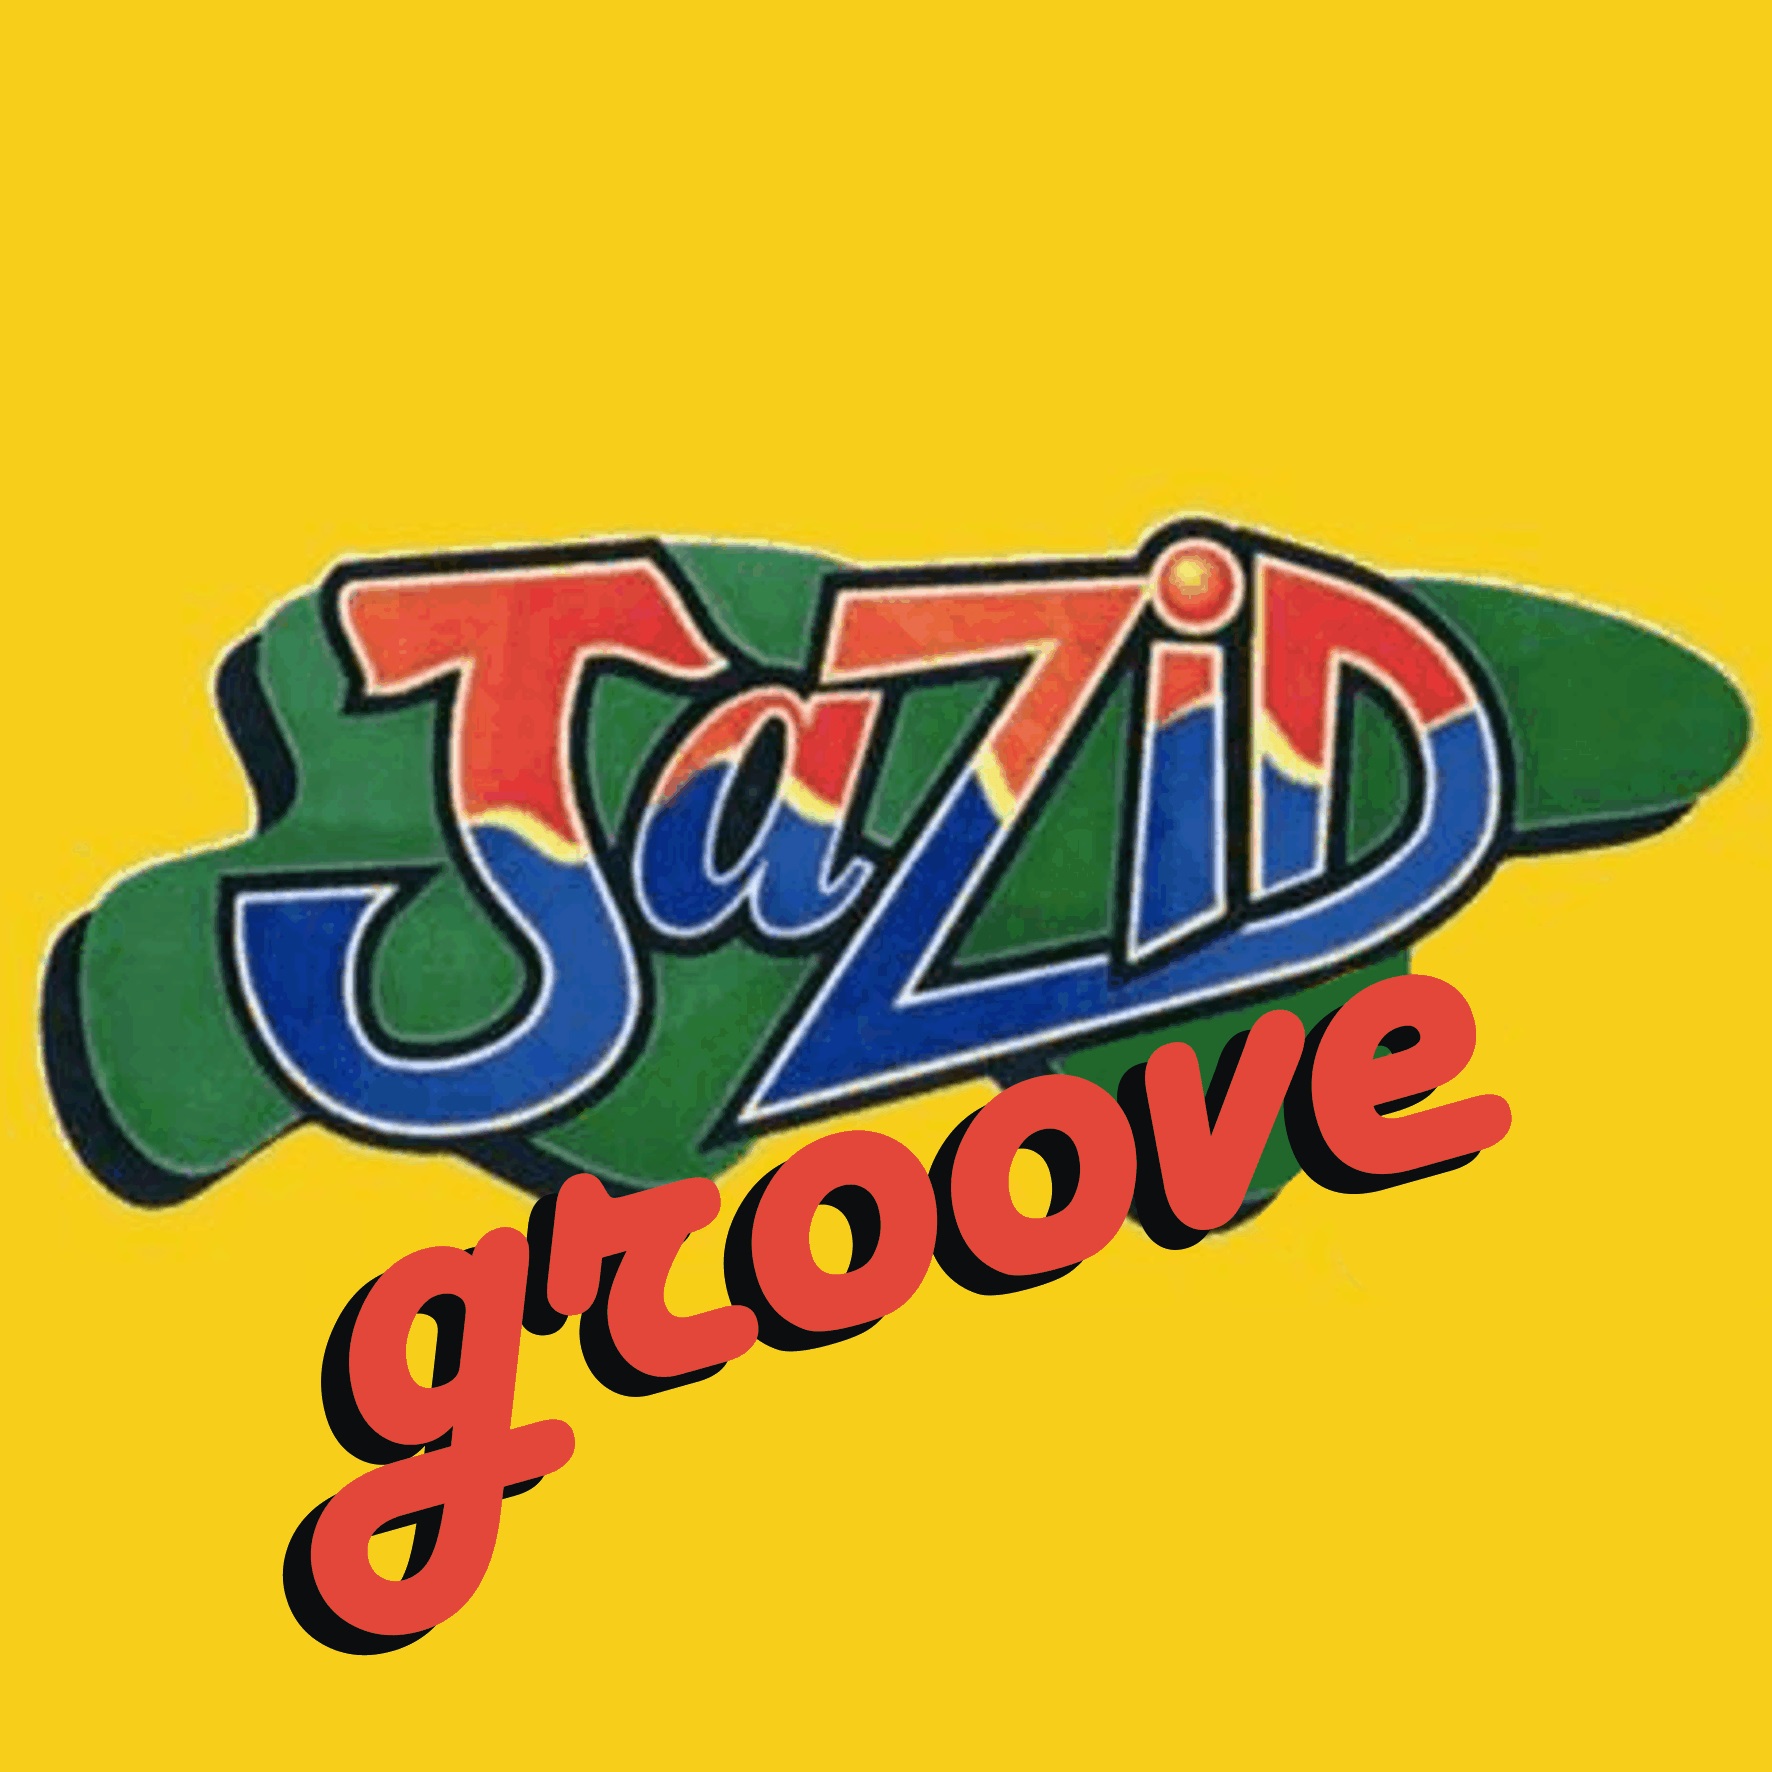 Jazid Groove 76